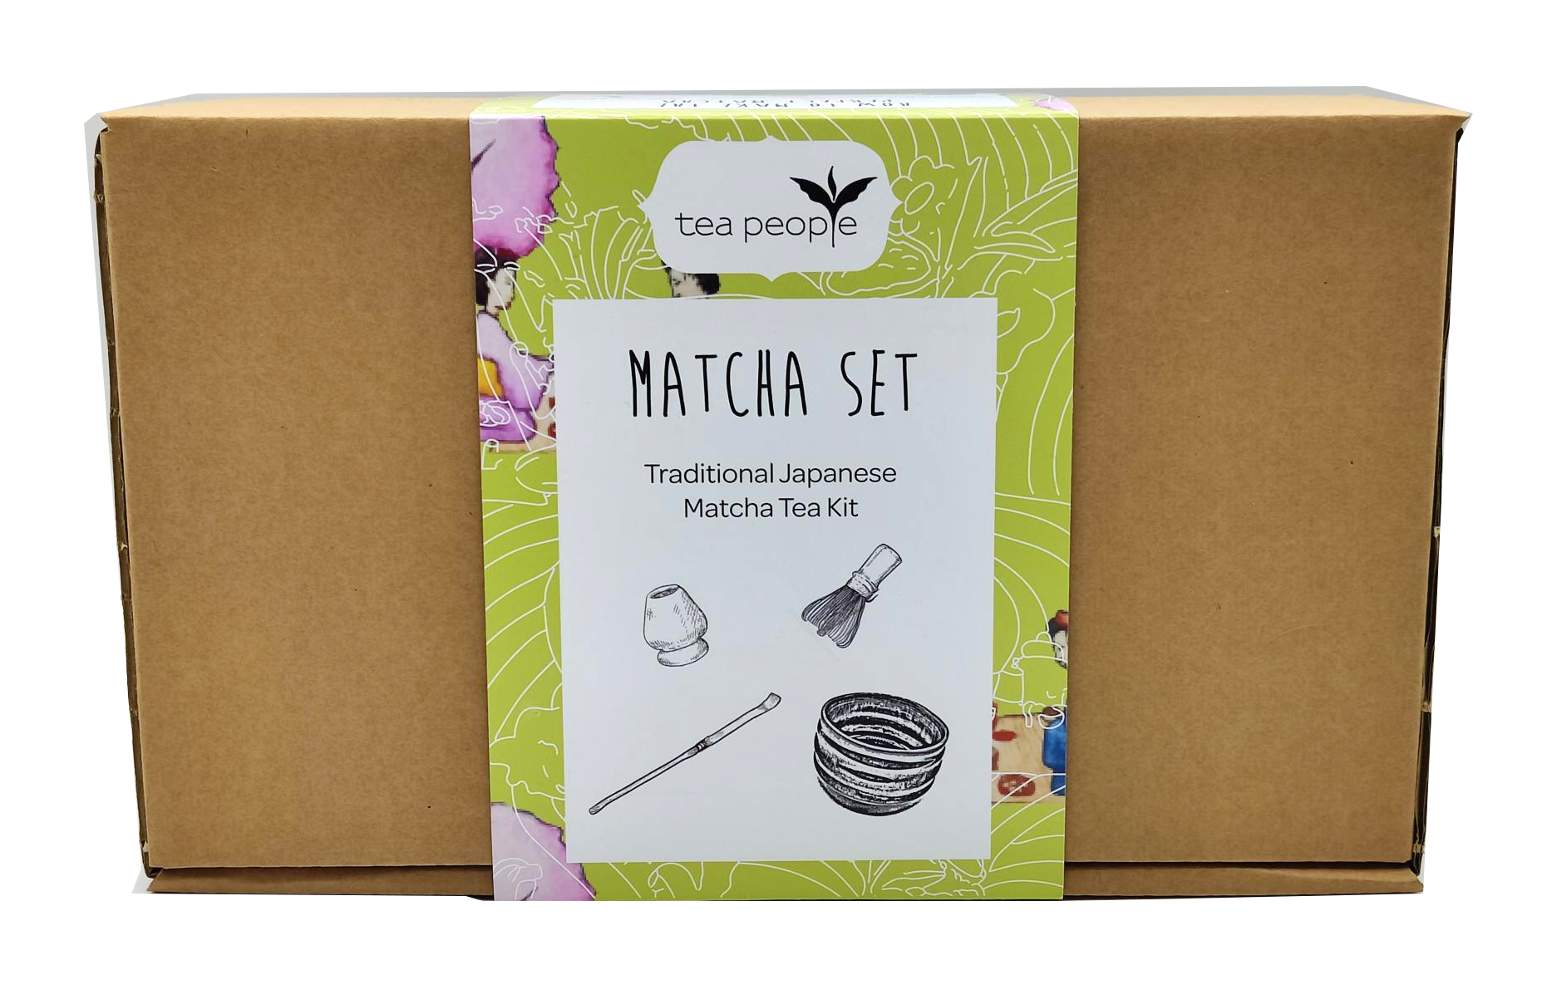 Matcha Set - a traditional matcha kit